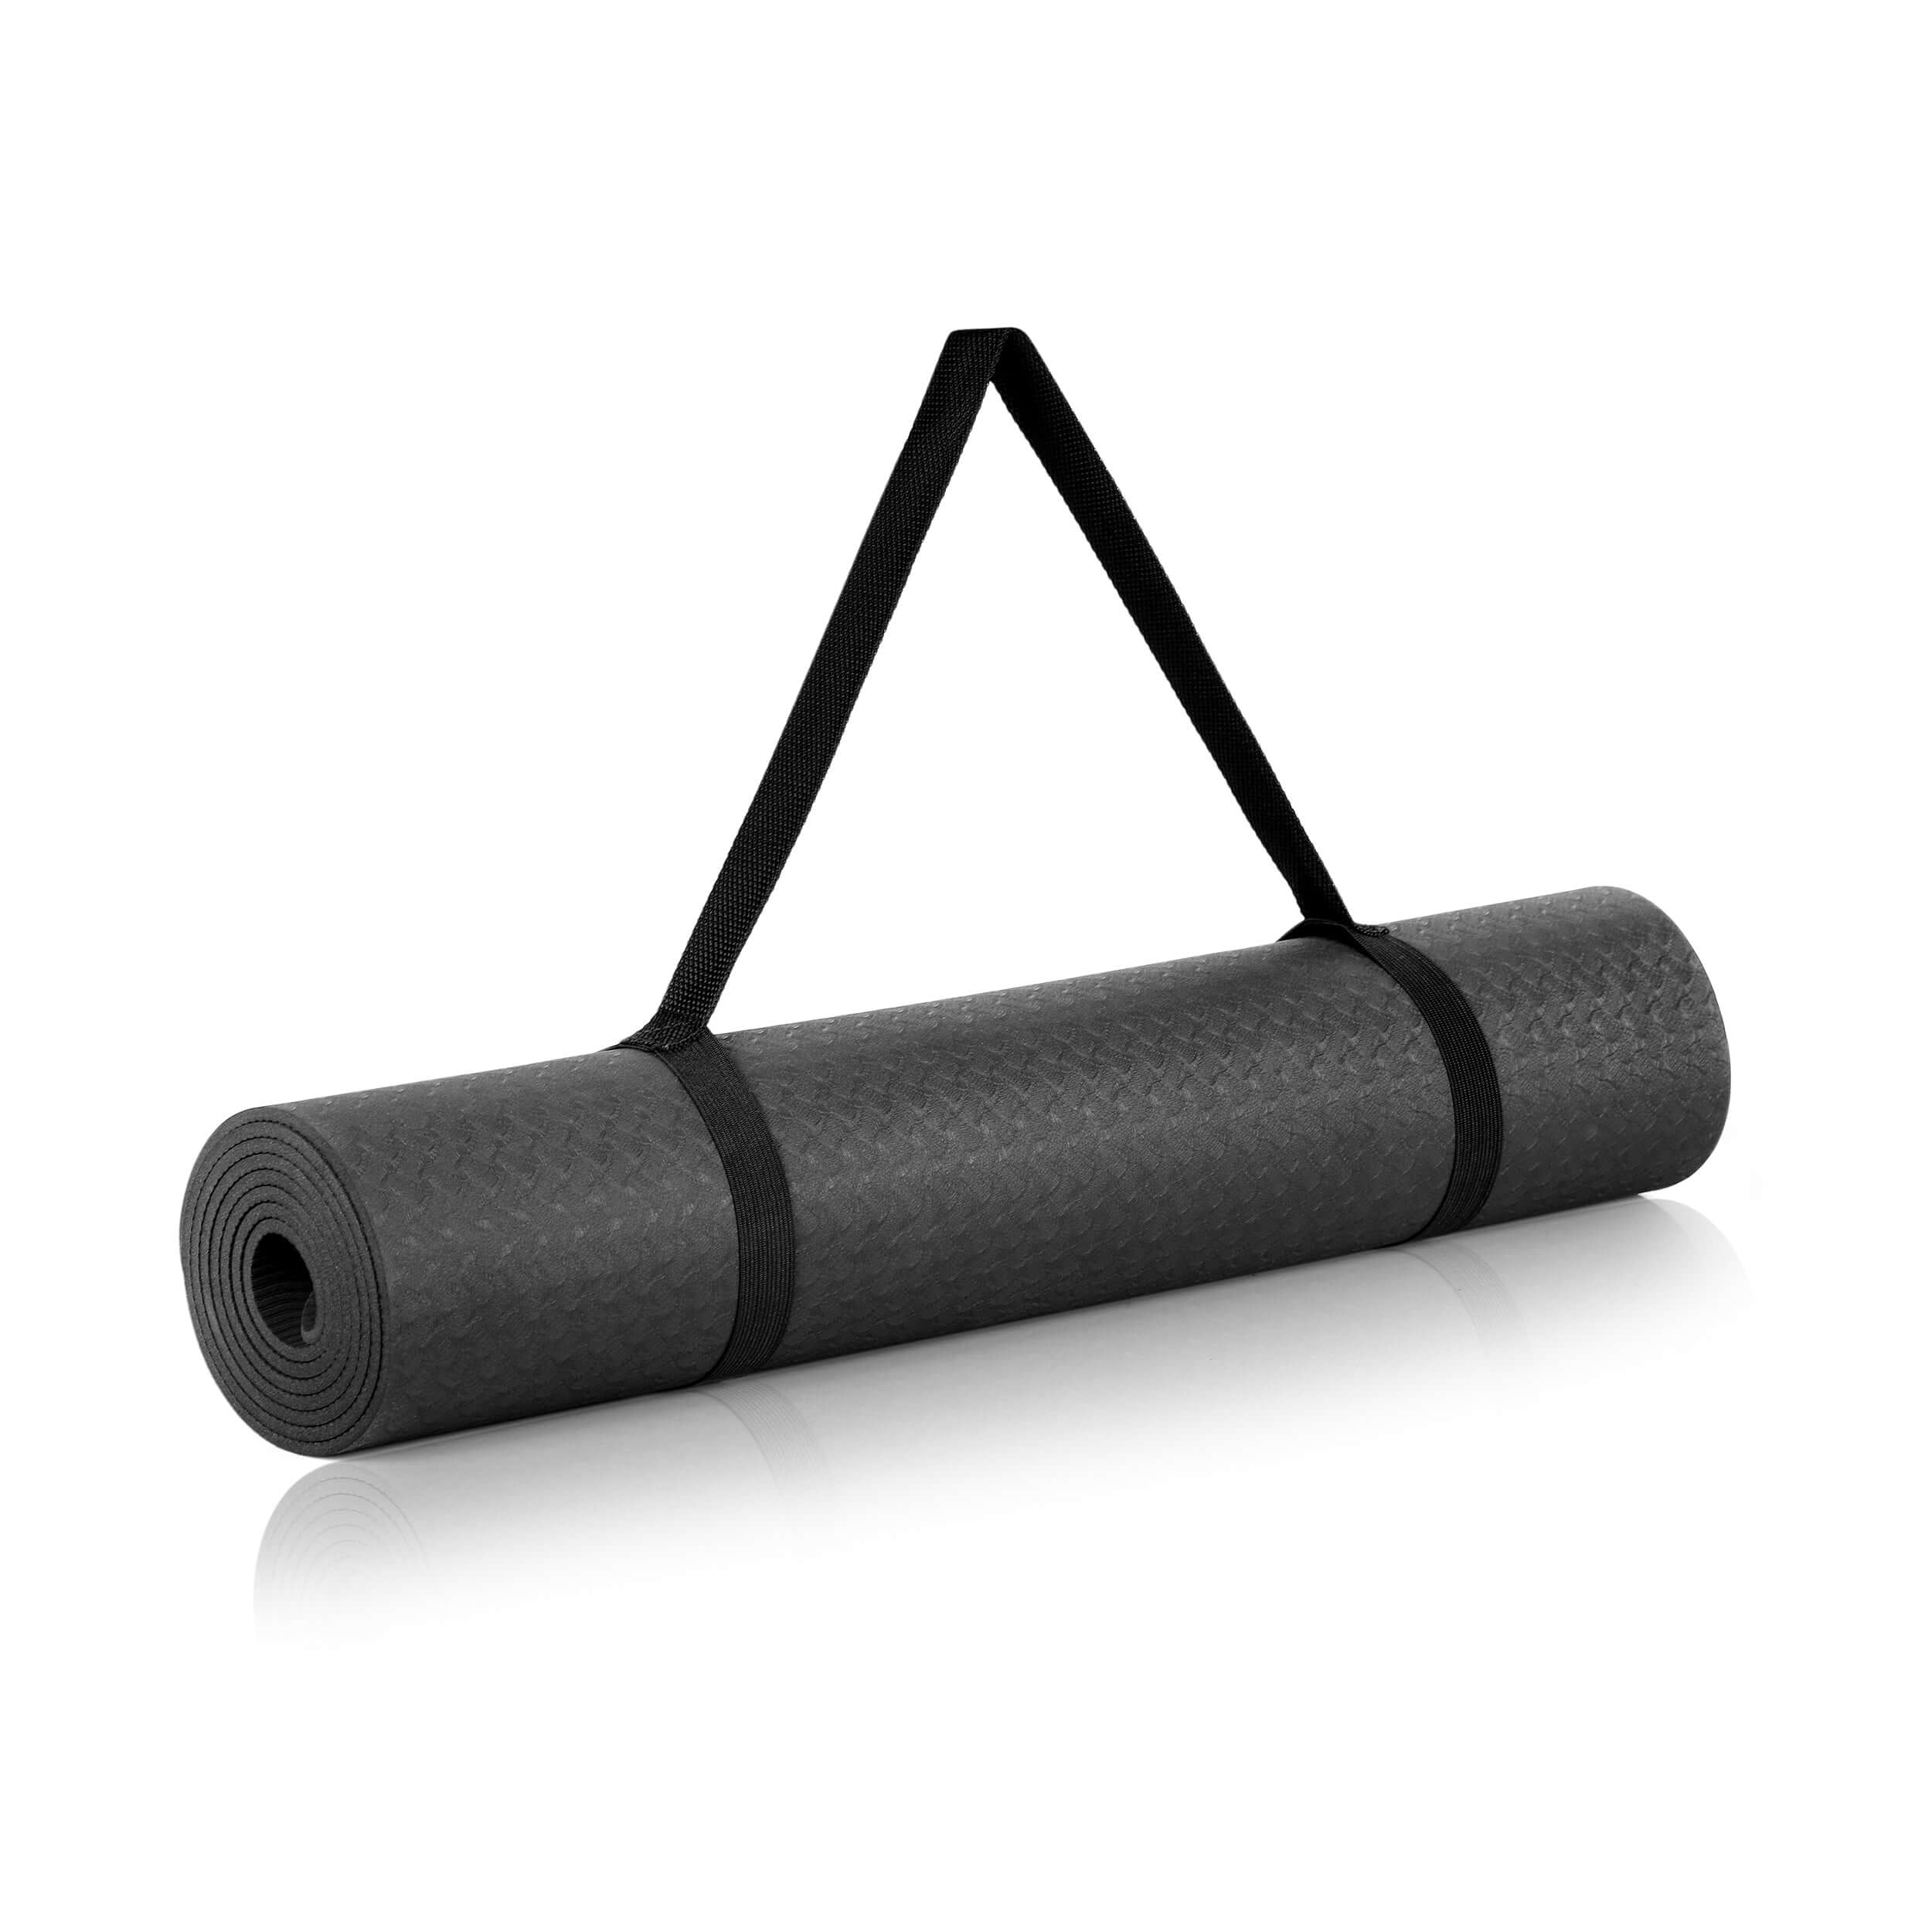 StronGrips Egzersiz Matı, kaydırmaz yüzeyi, 5 mm kalınlığı ve ideal ölçüleriyle tüm yoga, pilates, mobilite ve yer egzersizlerinizde her zaman yanınızda.